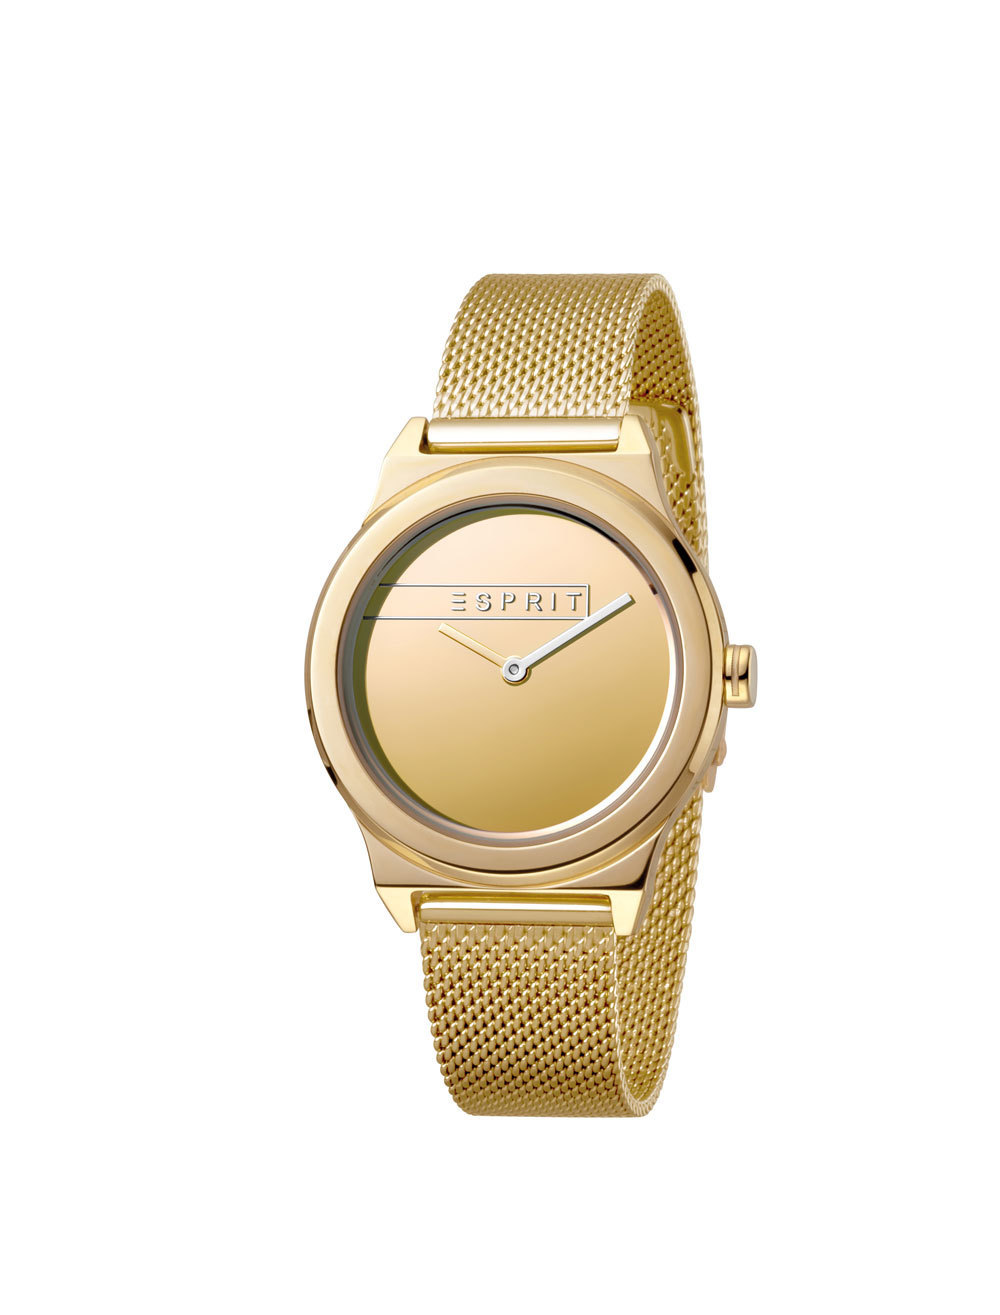 Esprit ES1L019M0085 Magnolia Gold Mesh horloge